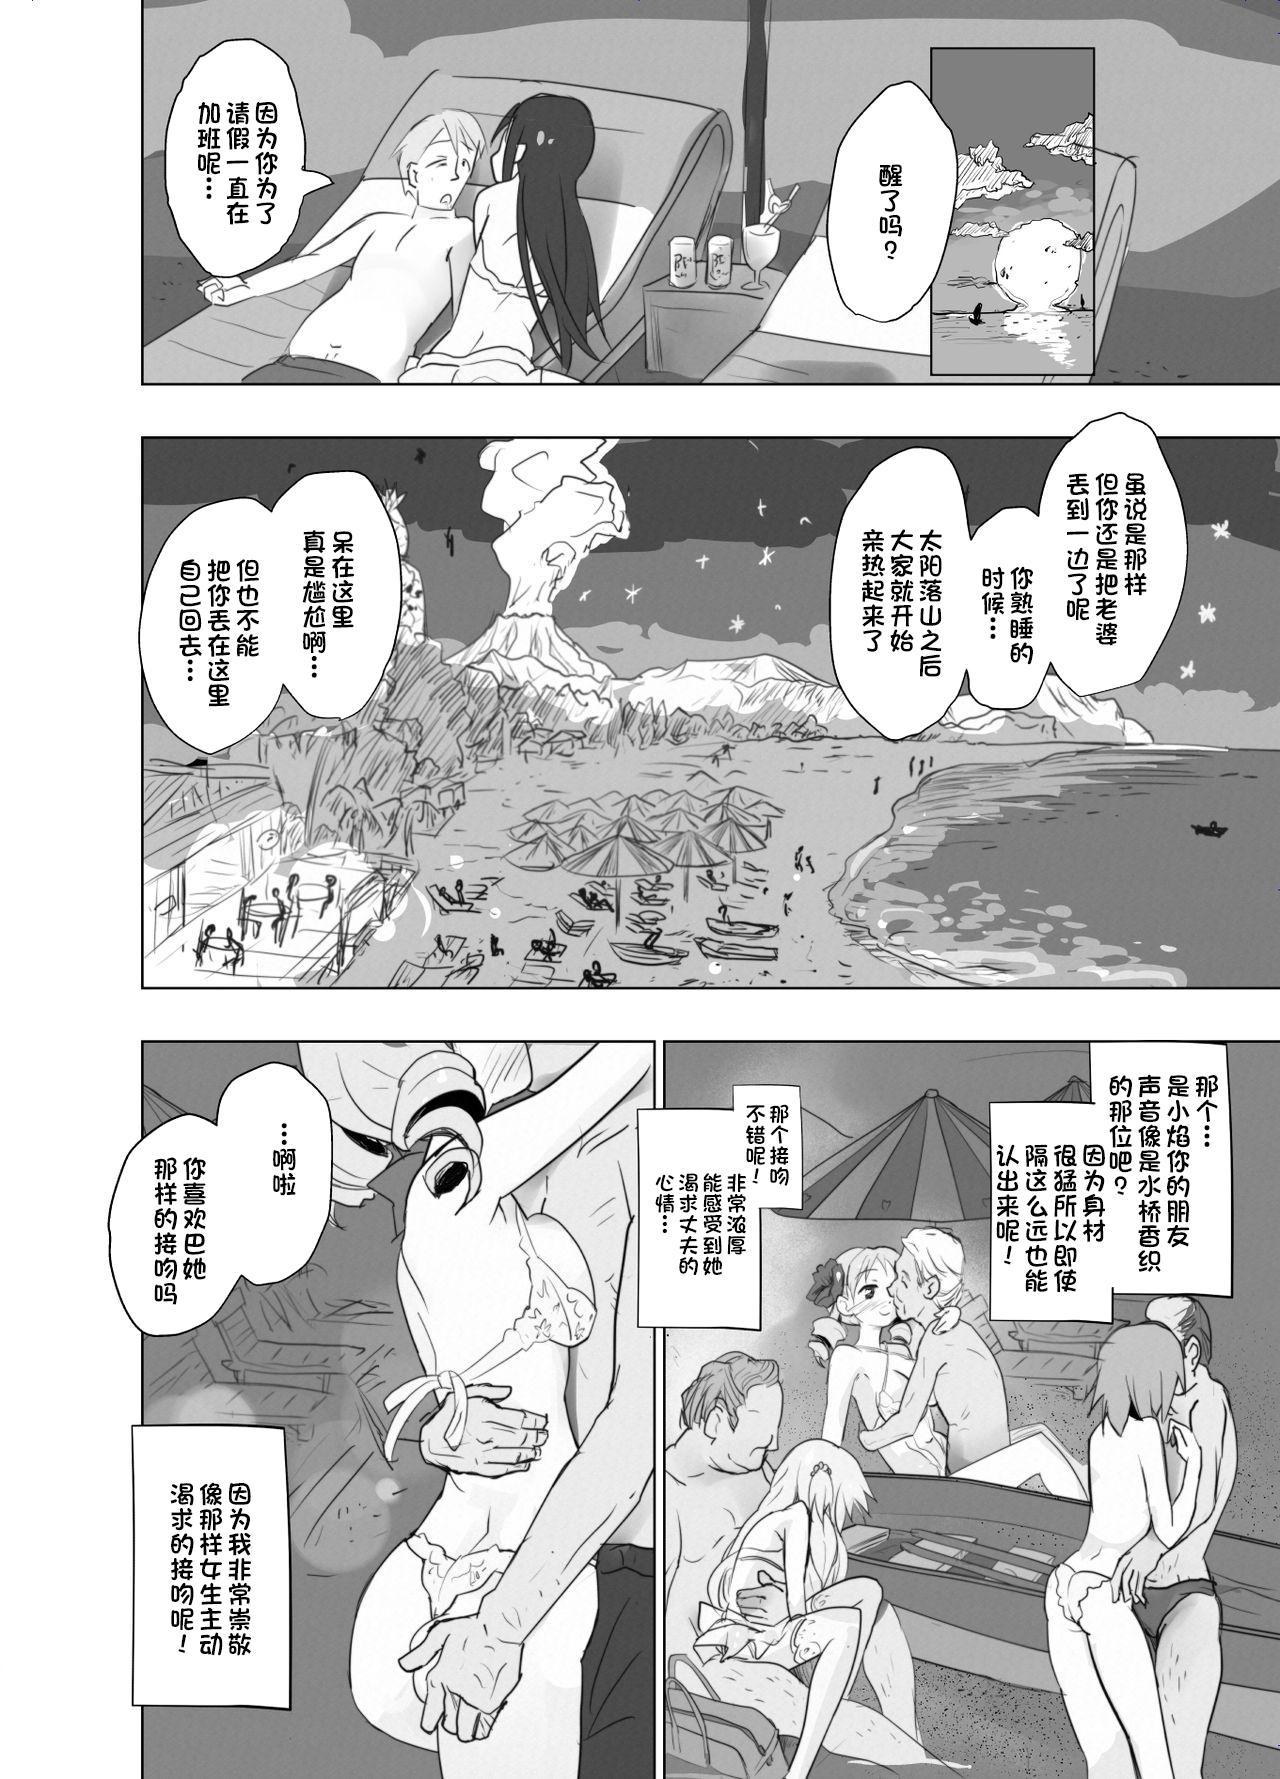 Pussyfucking Anata no Koto ga Daisuki na Homura-chan to Iku Shuudan Roshutsu Shinkon Ryokou Hawaii!! - Puella magi madoka magica Negra - Page 12